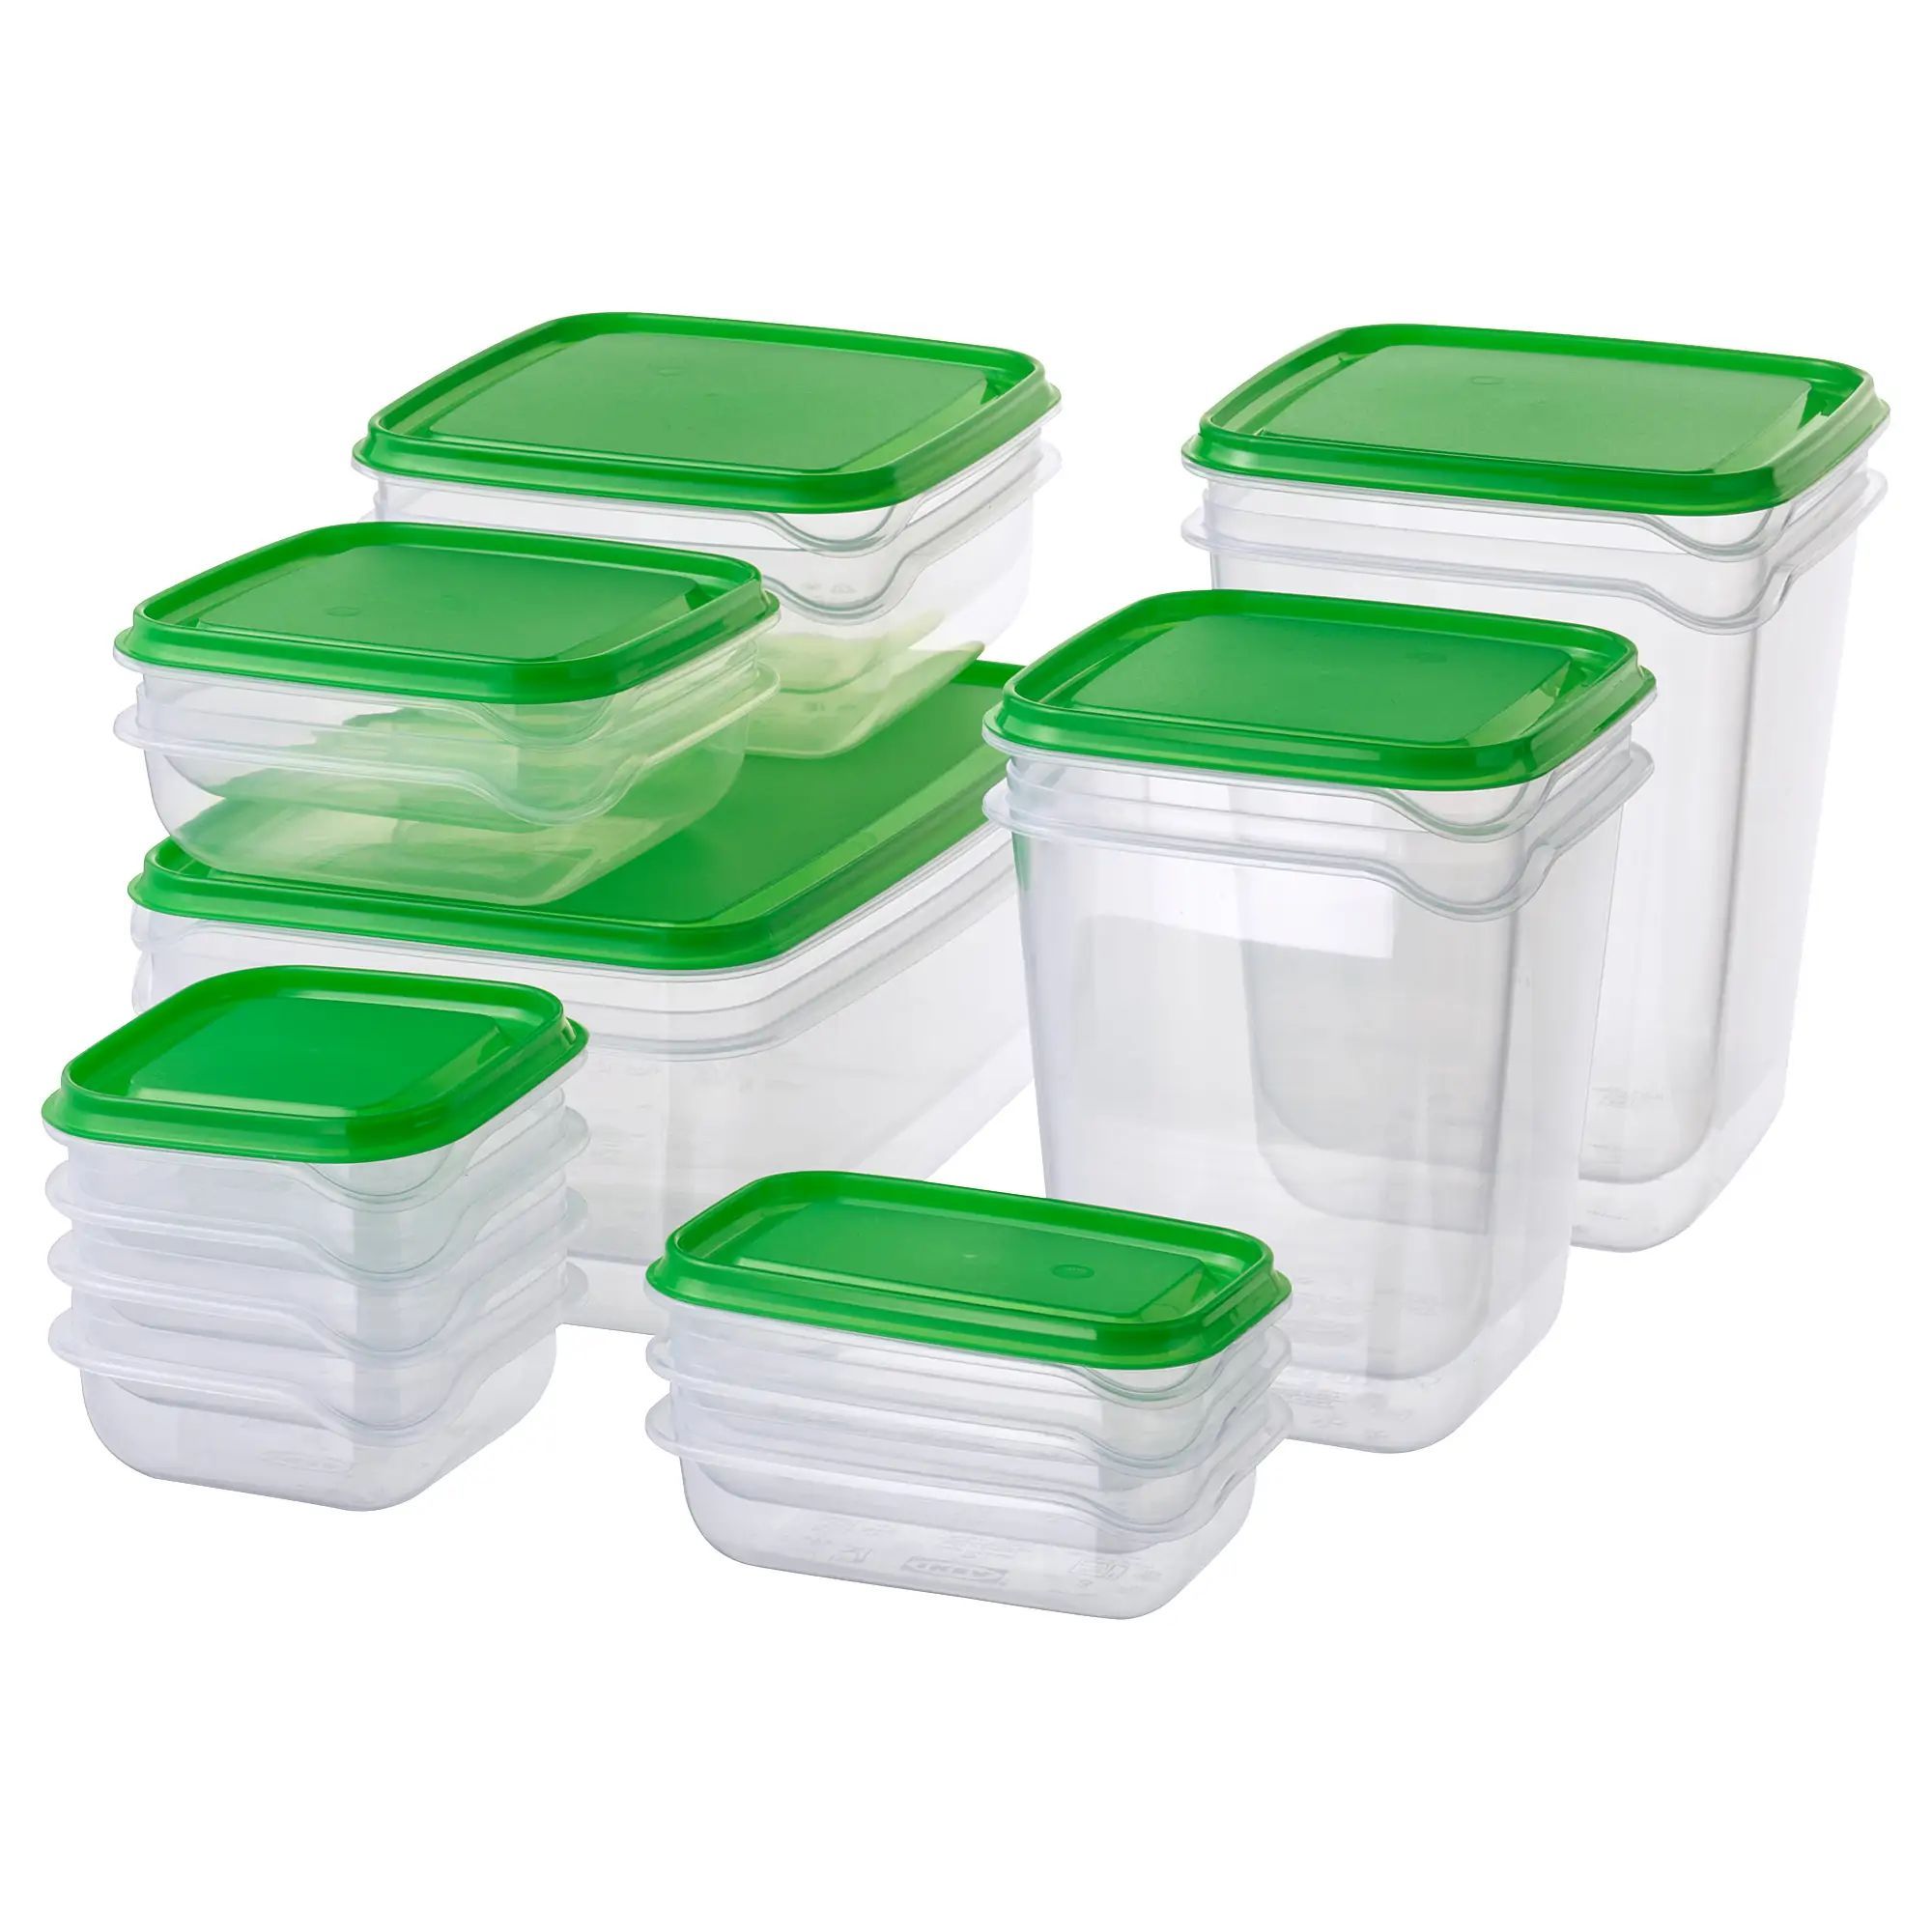 Купить контейнер с крышкой для продуктов. Pruta прута набор контейнеров 17 шт прозрачный/зеленый. Икеа прута набор контейнеров. Pruta прута набор контейнеров 17 шт. Икеа набор контейнеров 17.